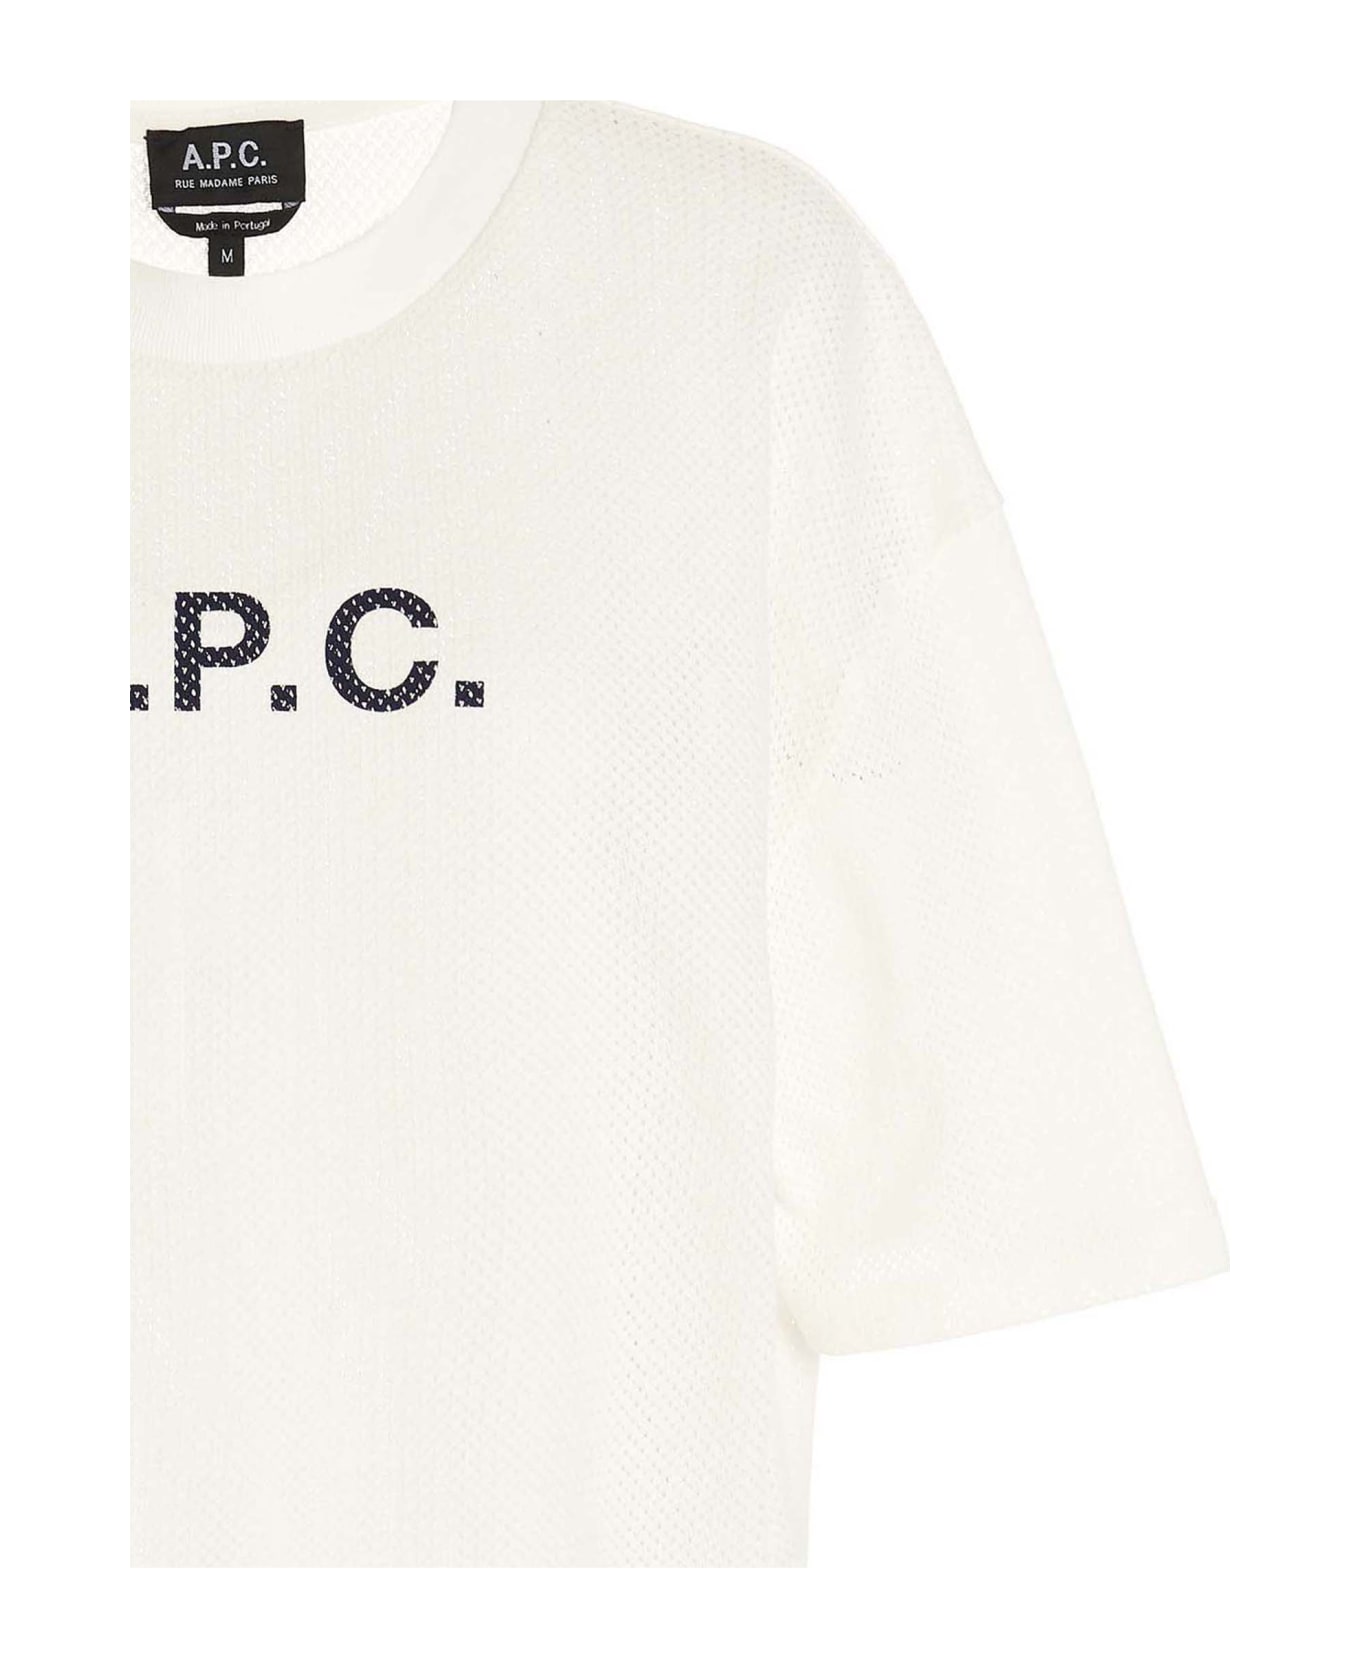 A.P.C. Moran T-shirt - Ecru